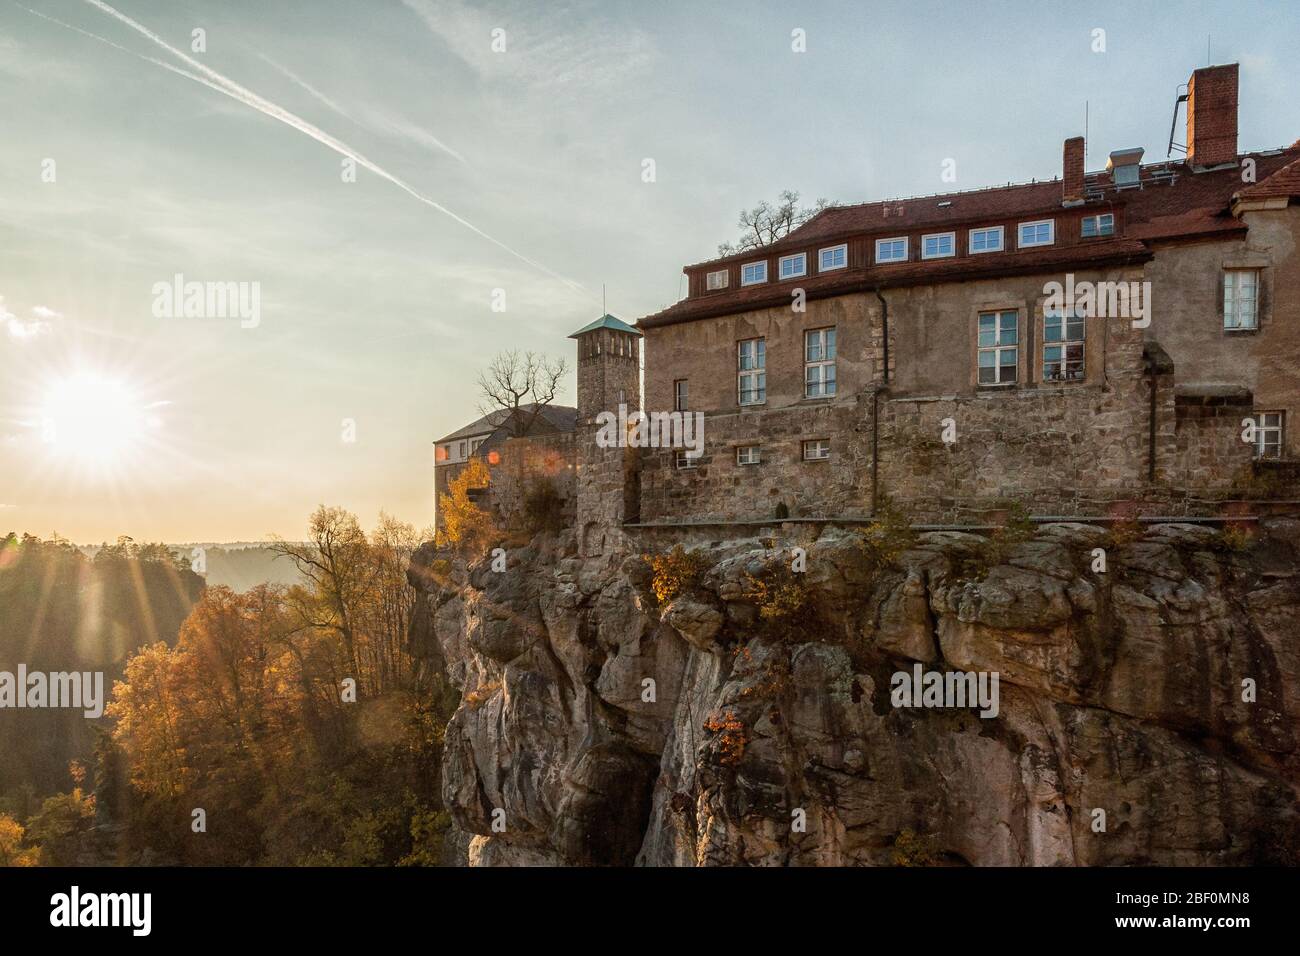 La ciudad de Hohnstein en las montañas de piedra arenisca de Elbe Foto de stock